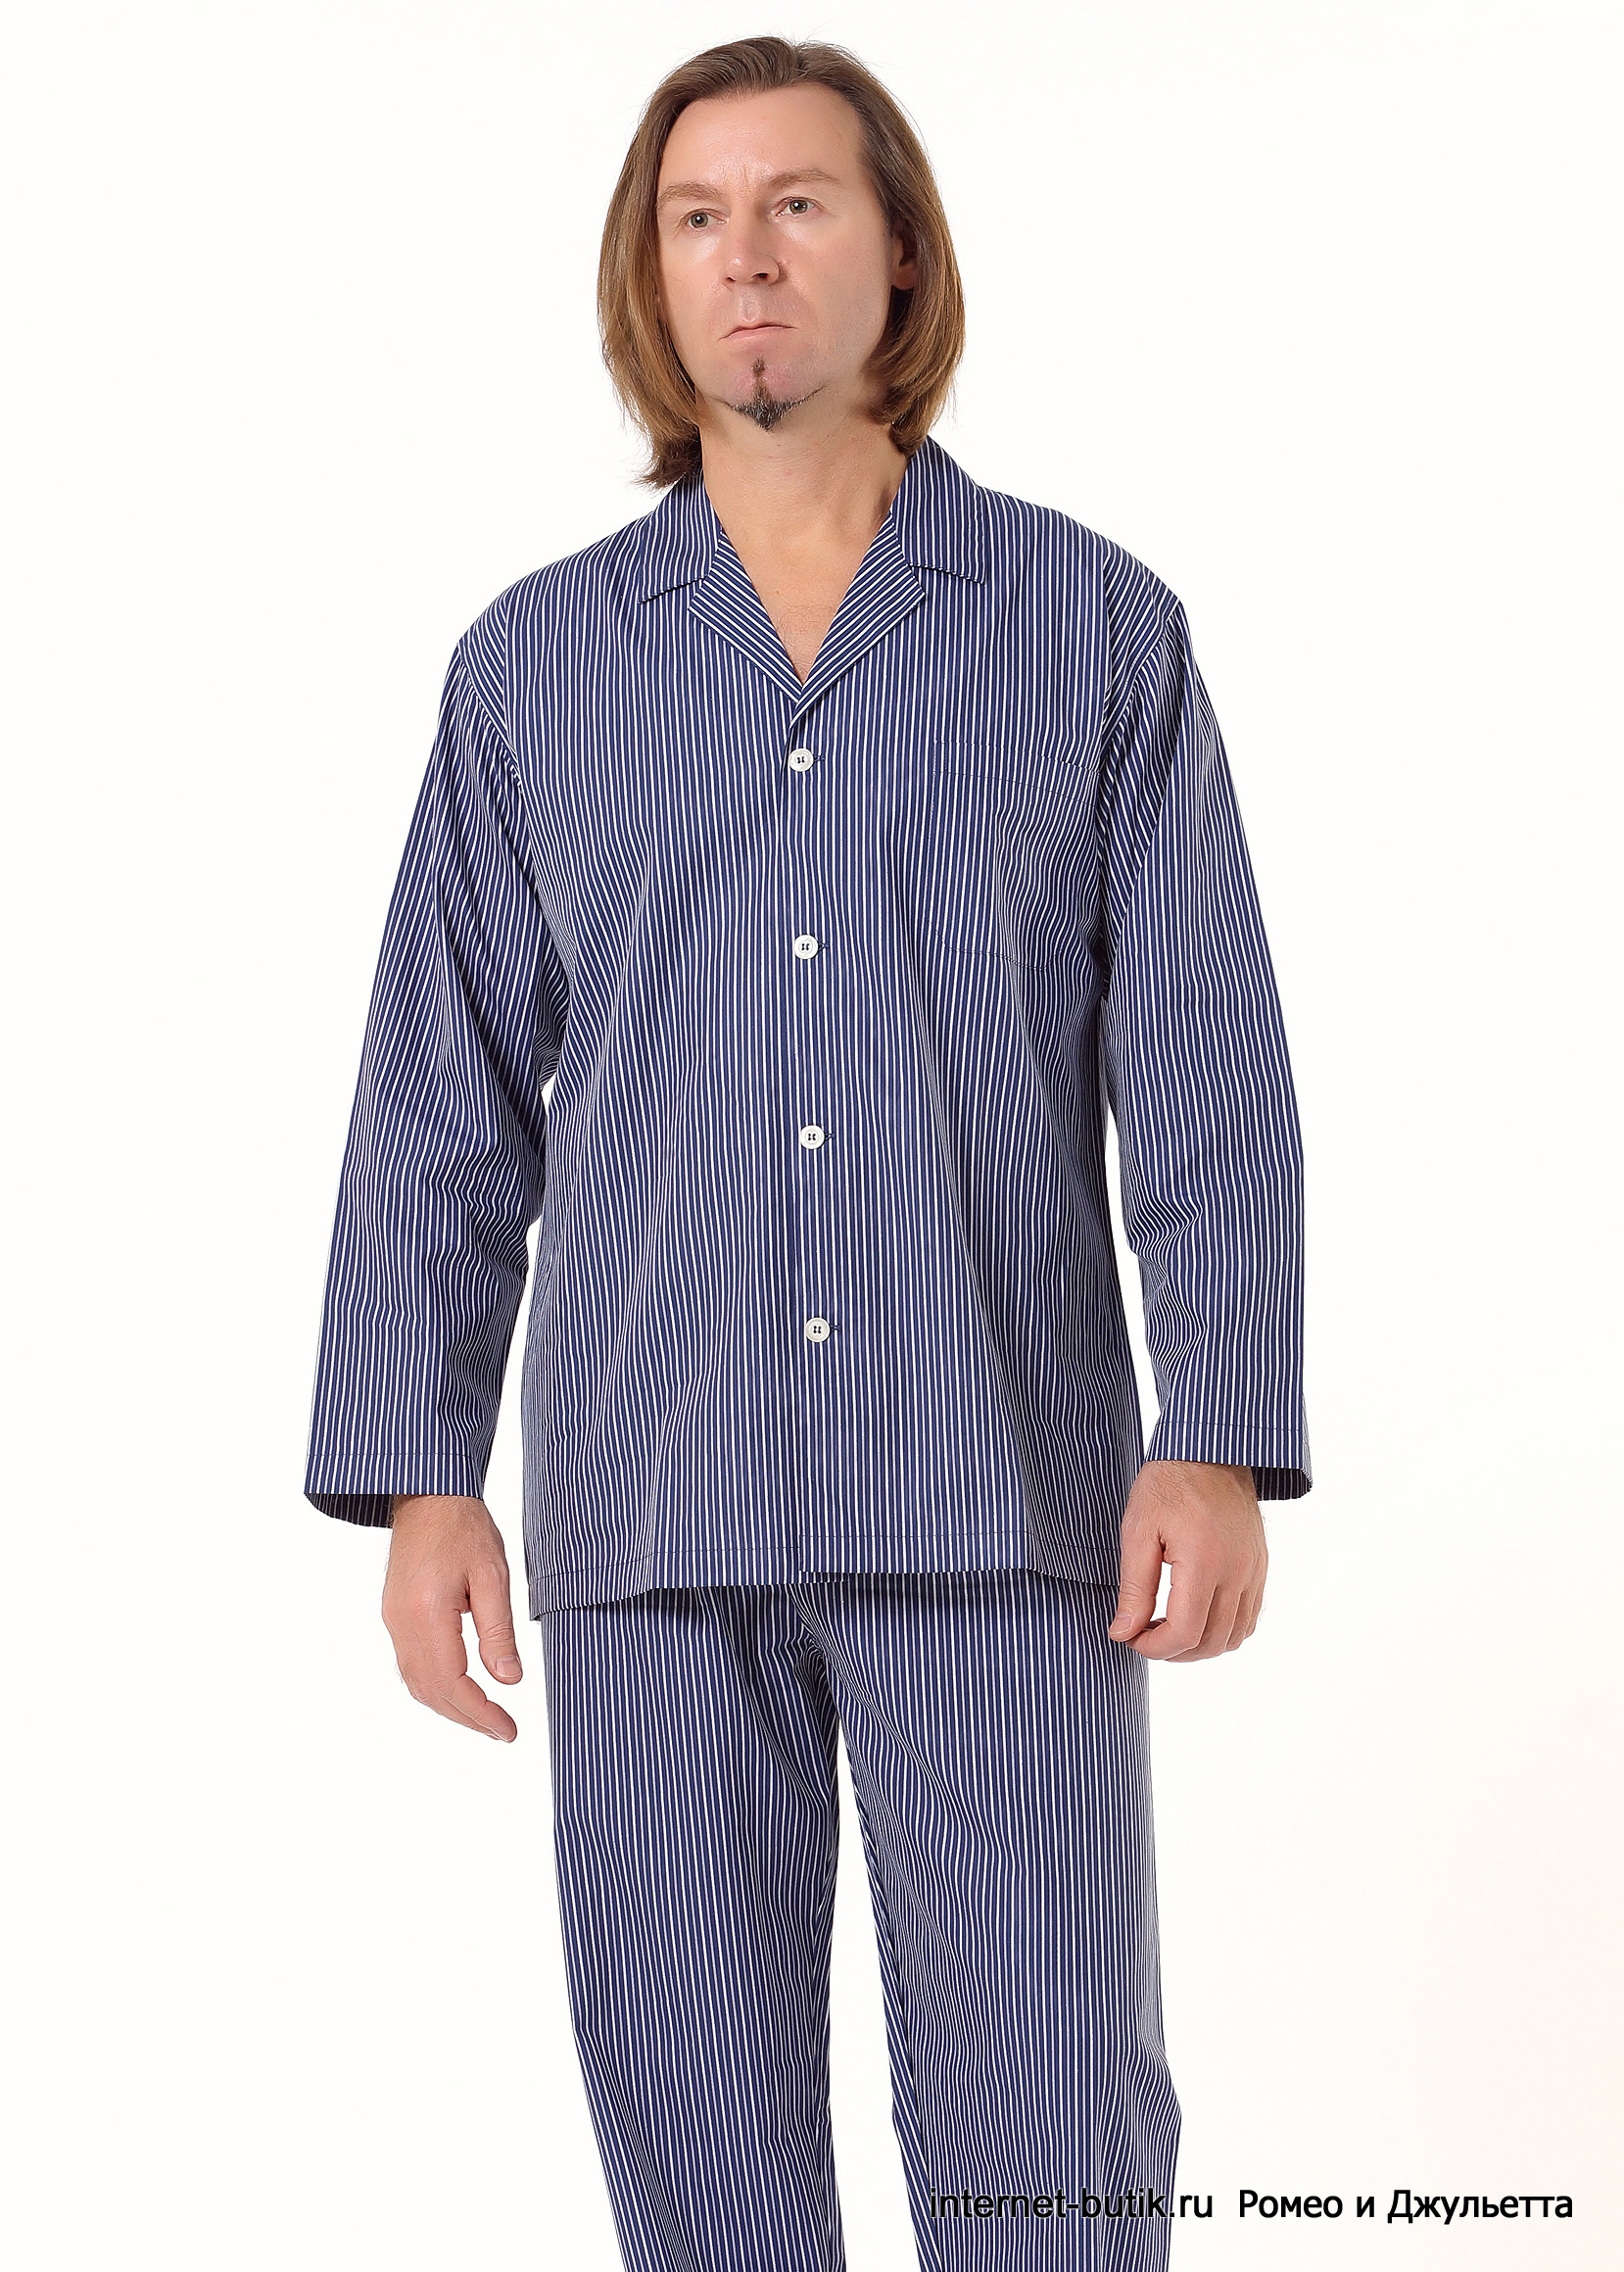 Купить мужскую пижаму в москве. Пижама мужская комфорт 6258. Santorini shop пижама мужская. Пижама мужская Кен, размер 56.